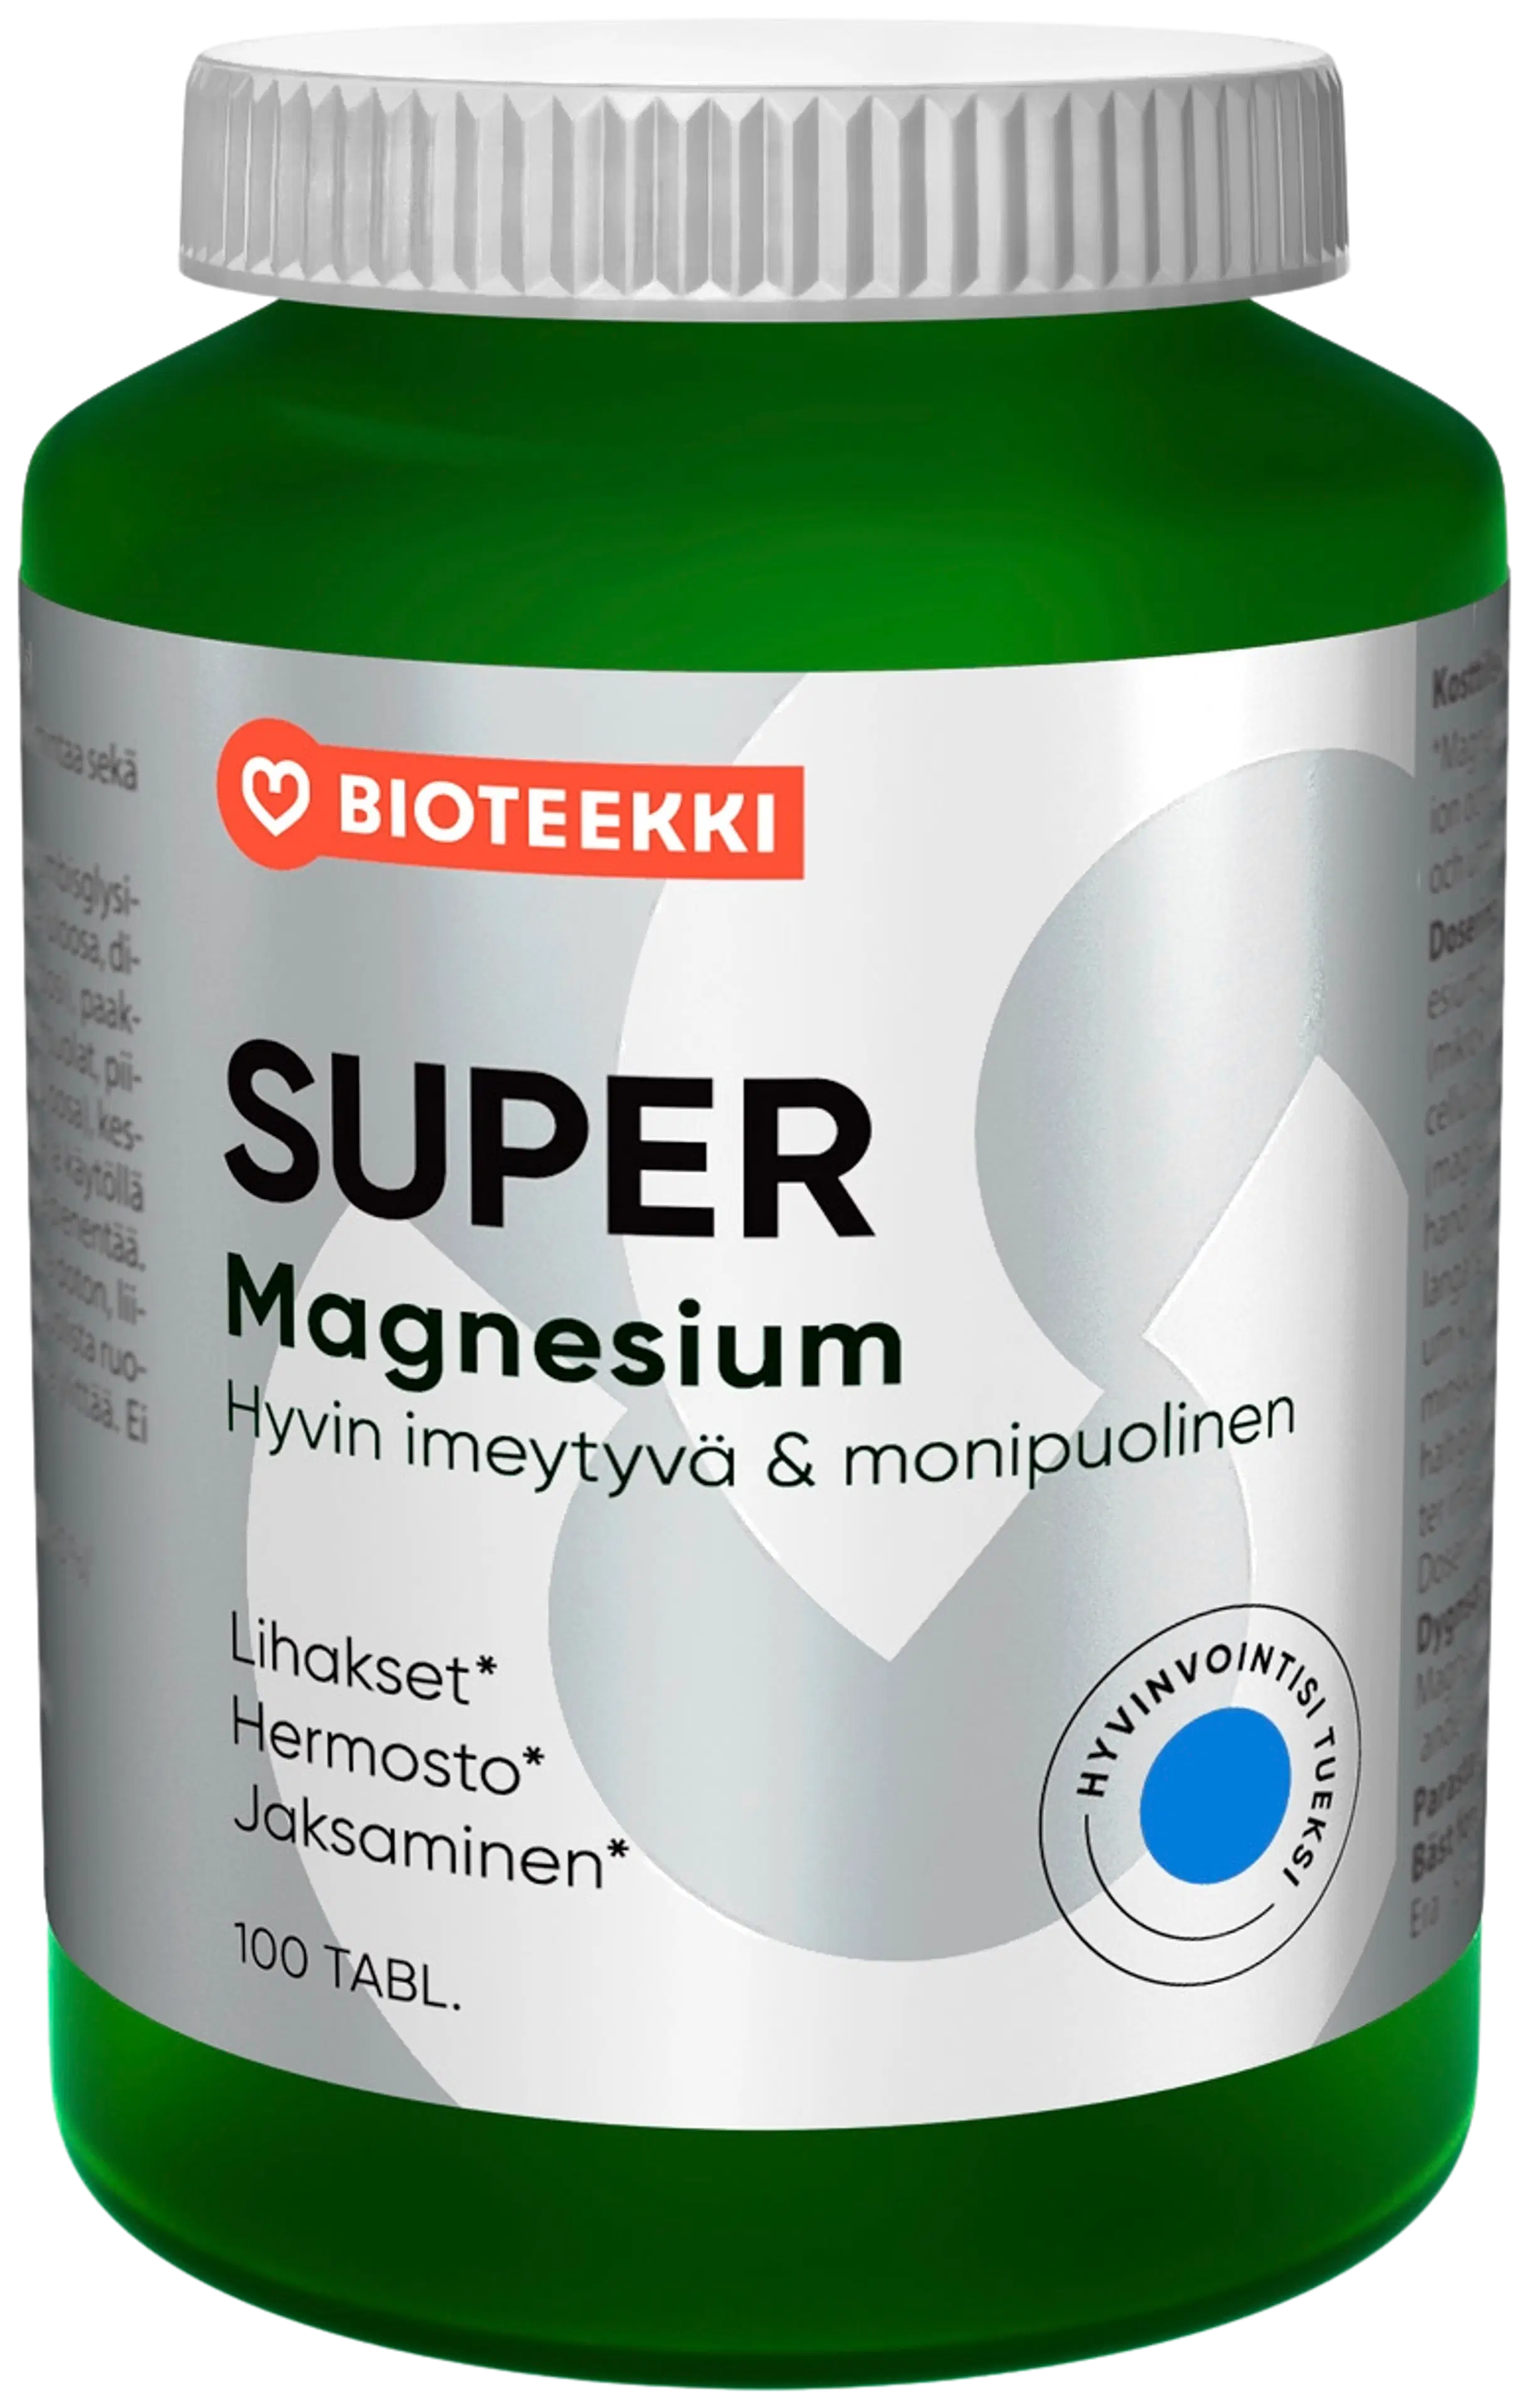 Bioteekin Super Magnesium ravintolisä 100 tabl